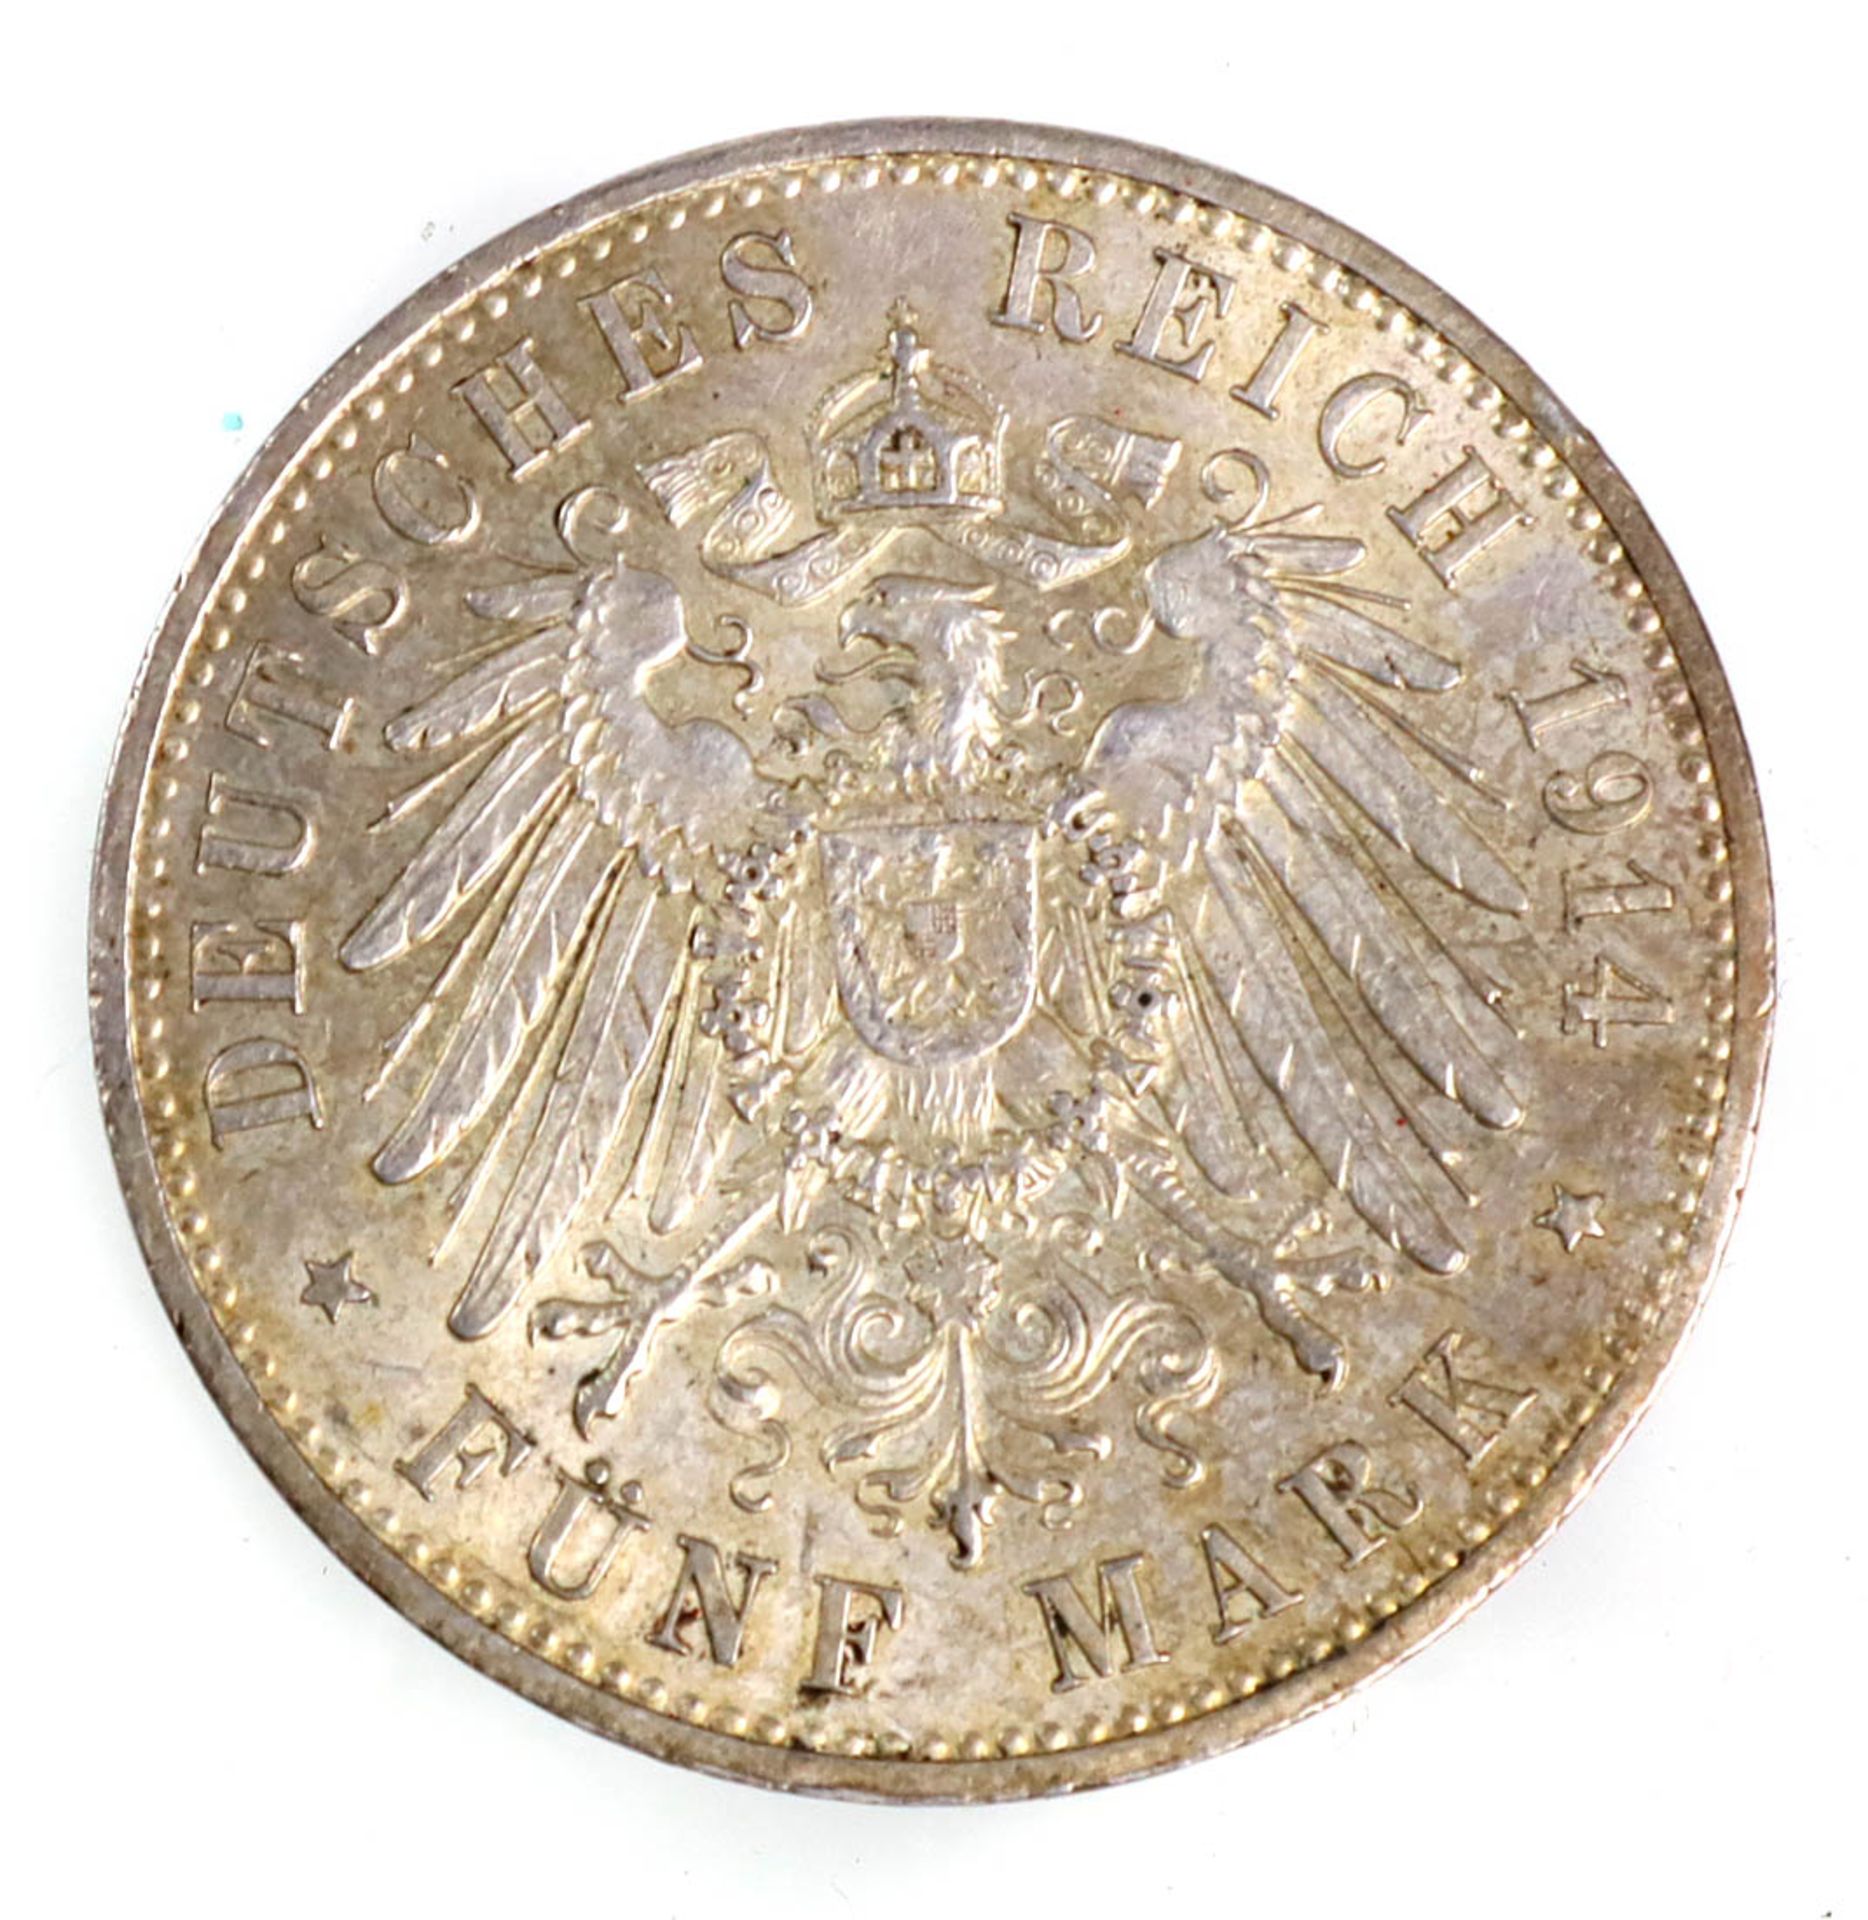 5 Mark Wilhelm II Preussen 1914 ASilbermünze Fünf Mark Deutsches Reich 1914, so um g - Image 2 of 2